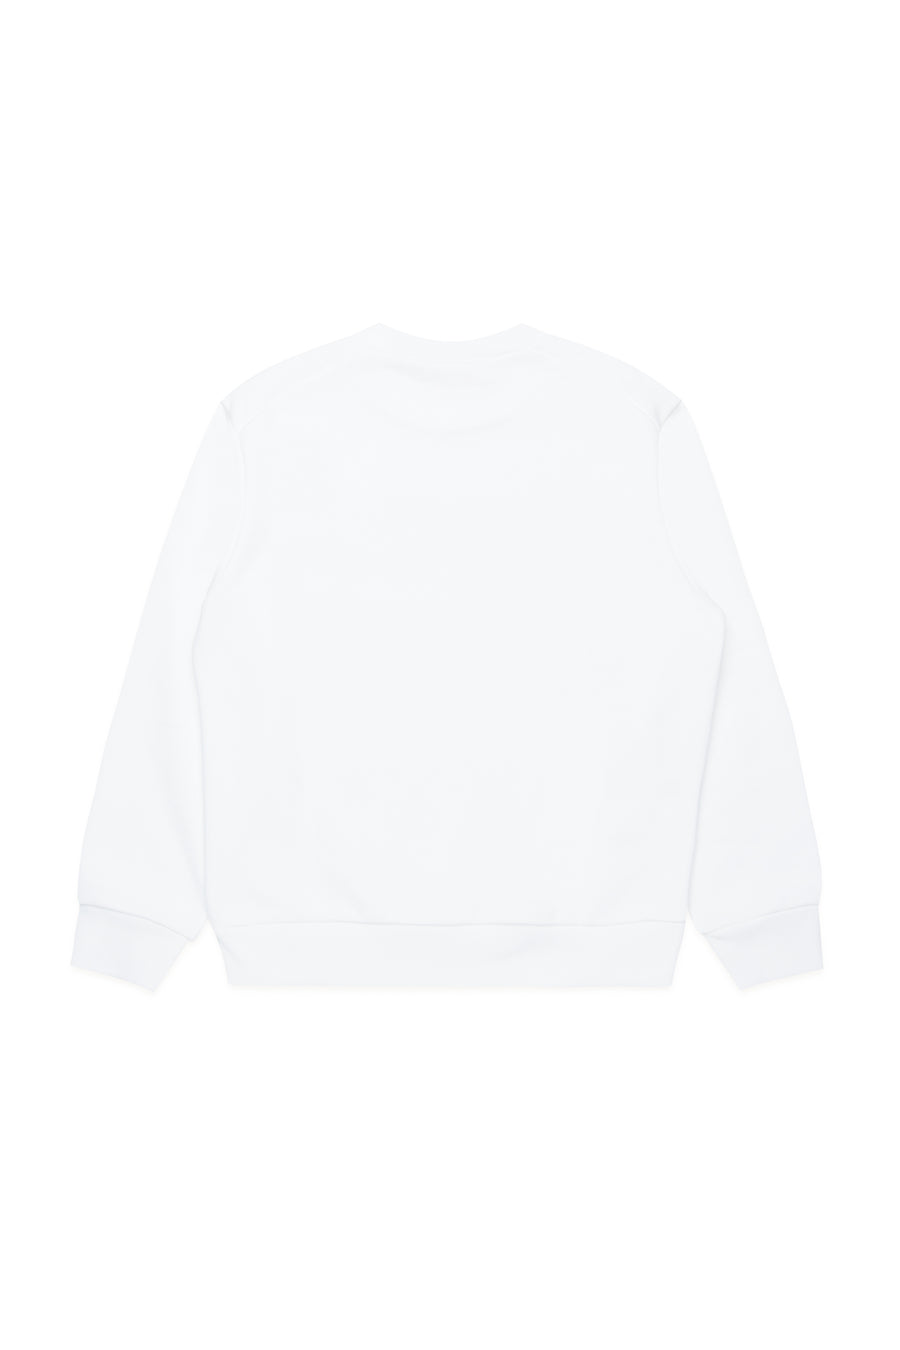 Marni print white sweatshirt by Marni